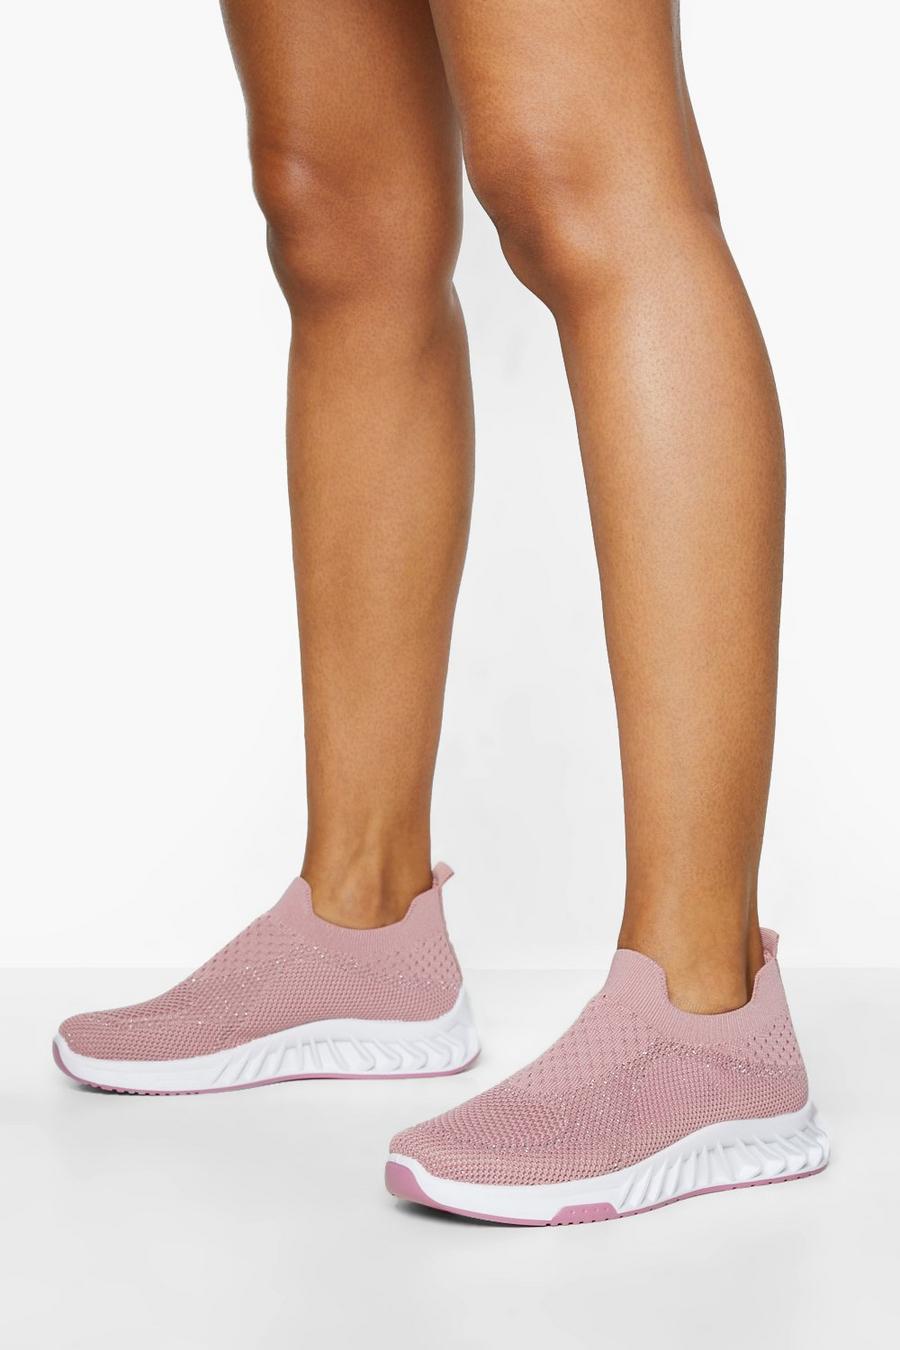 Zapatillas deportivas calcetín de tela, Pink rosa